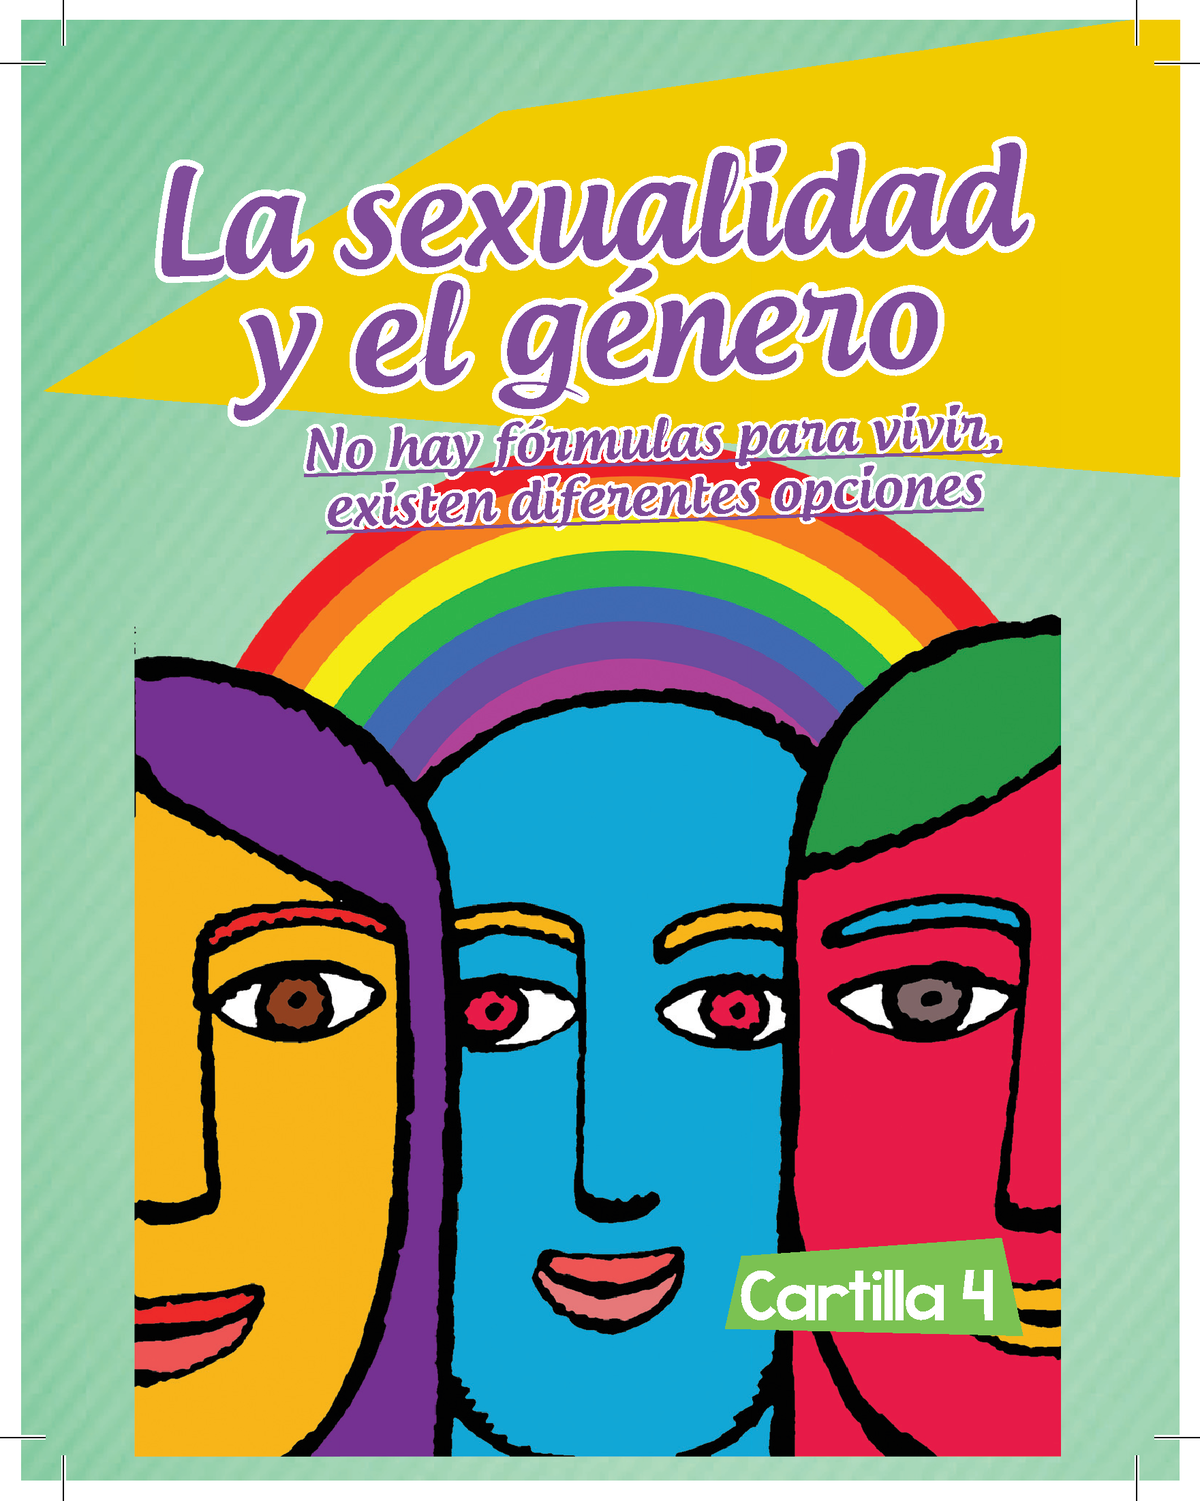 C4 La Sexualidad Y El Genero La Sexualidad Y El Género La Sexualidad Y El Género Cartilla 4 No 7558